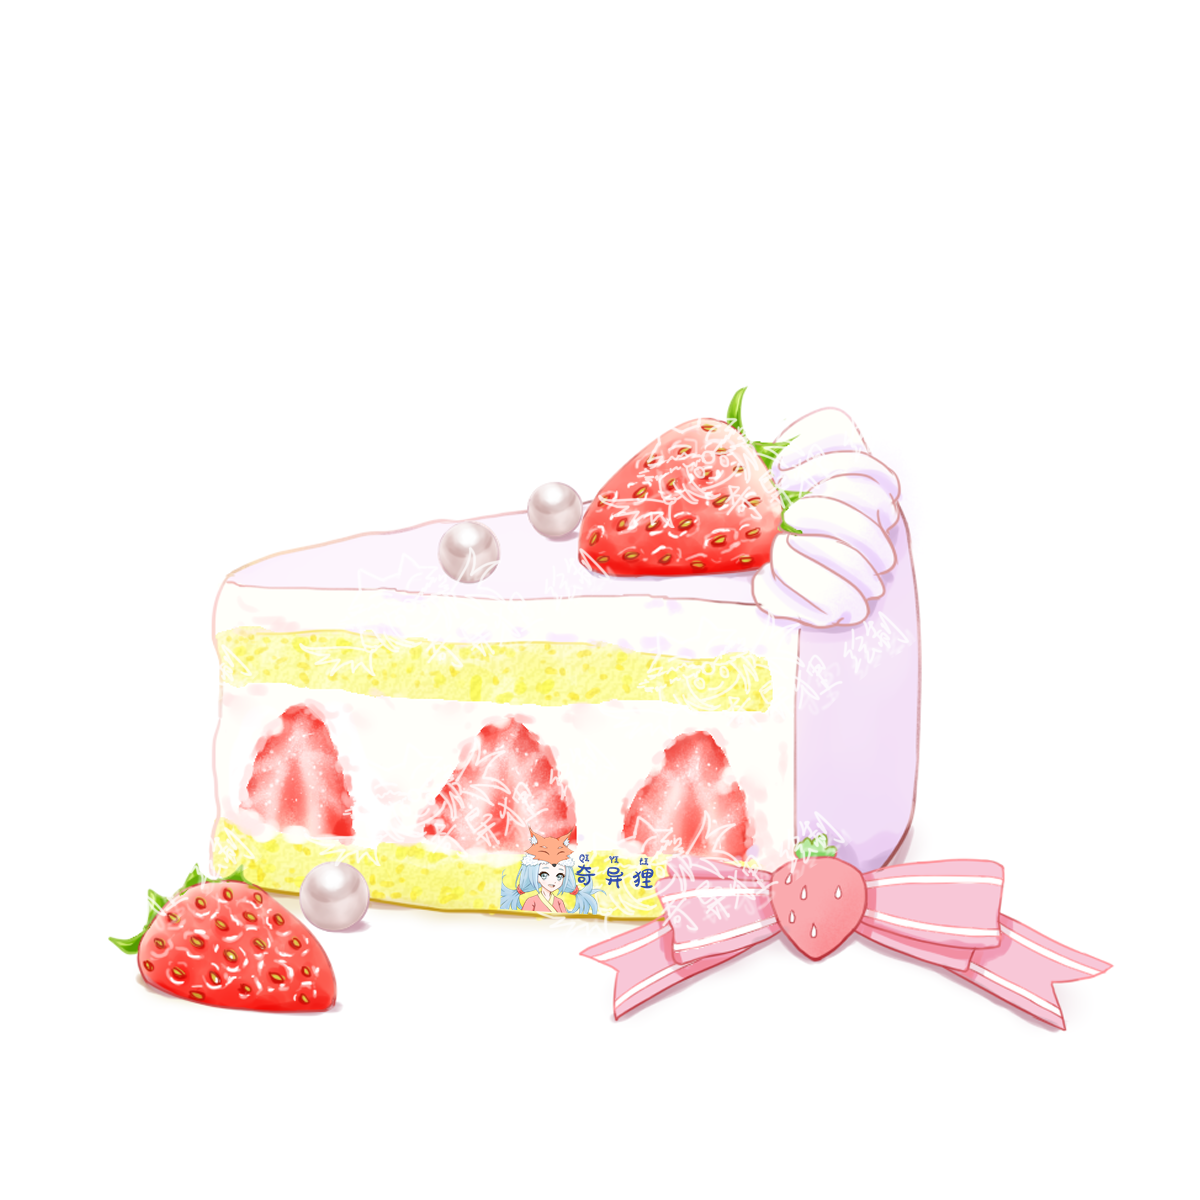 珍珠草莓蛋糕~~头像同人高清图